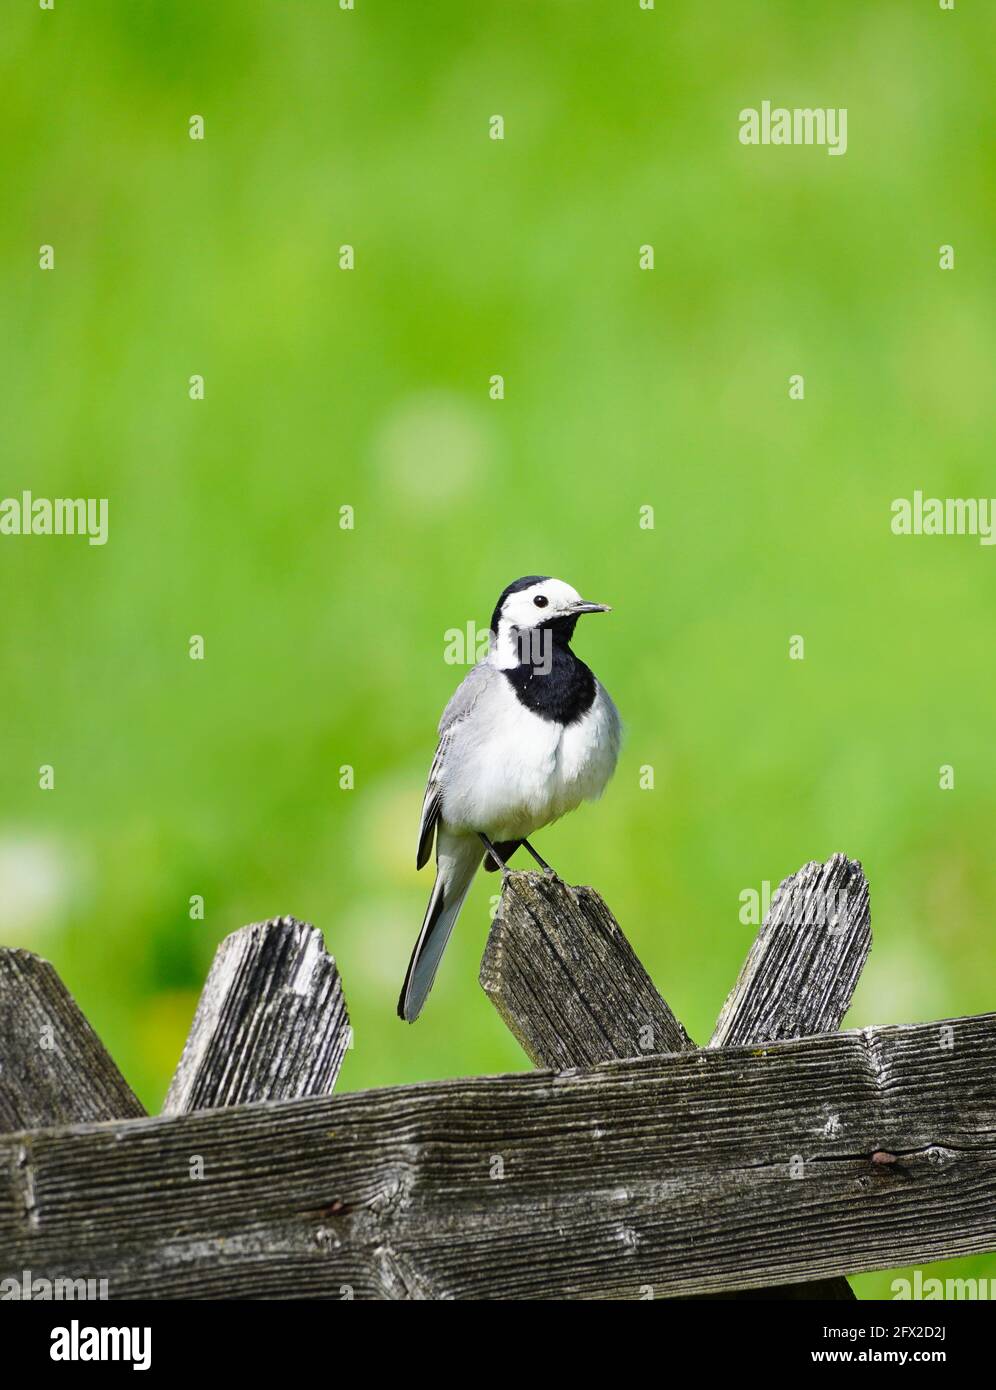 Nahaufnahme einer Bachstelze, motacilla alba. Vogel auf einem Holzzaun mit grüner Wiese im Hintergrund. Singvögel mit schwarzem, grauem und weißem Gefieder Stockfoto